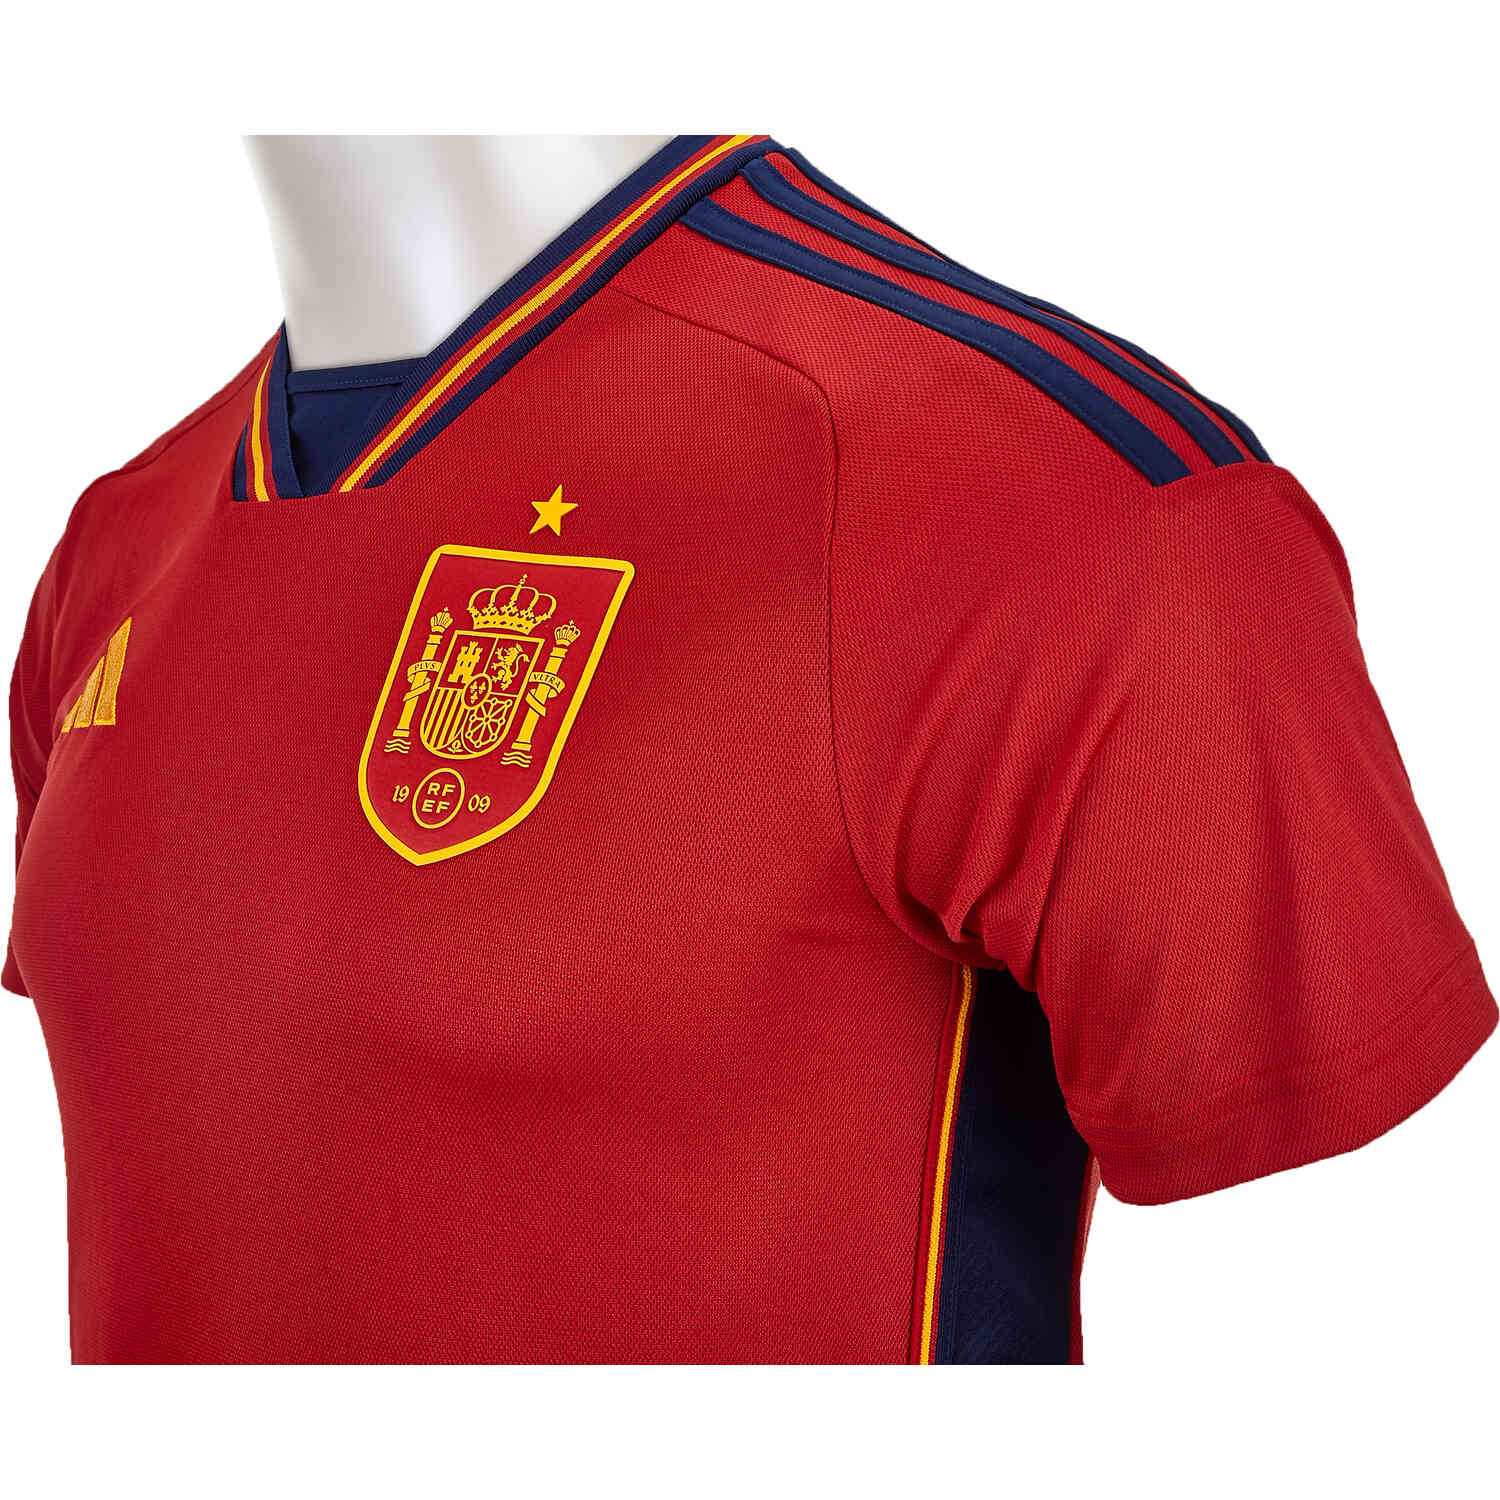 2022 Kids adidas Spain Jersey - SoccerPro